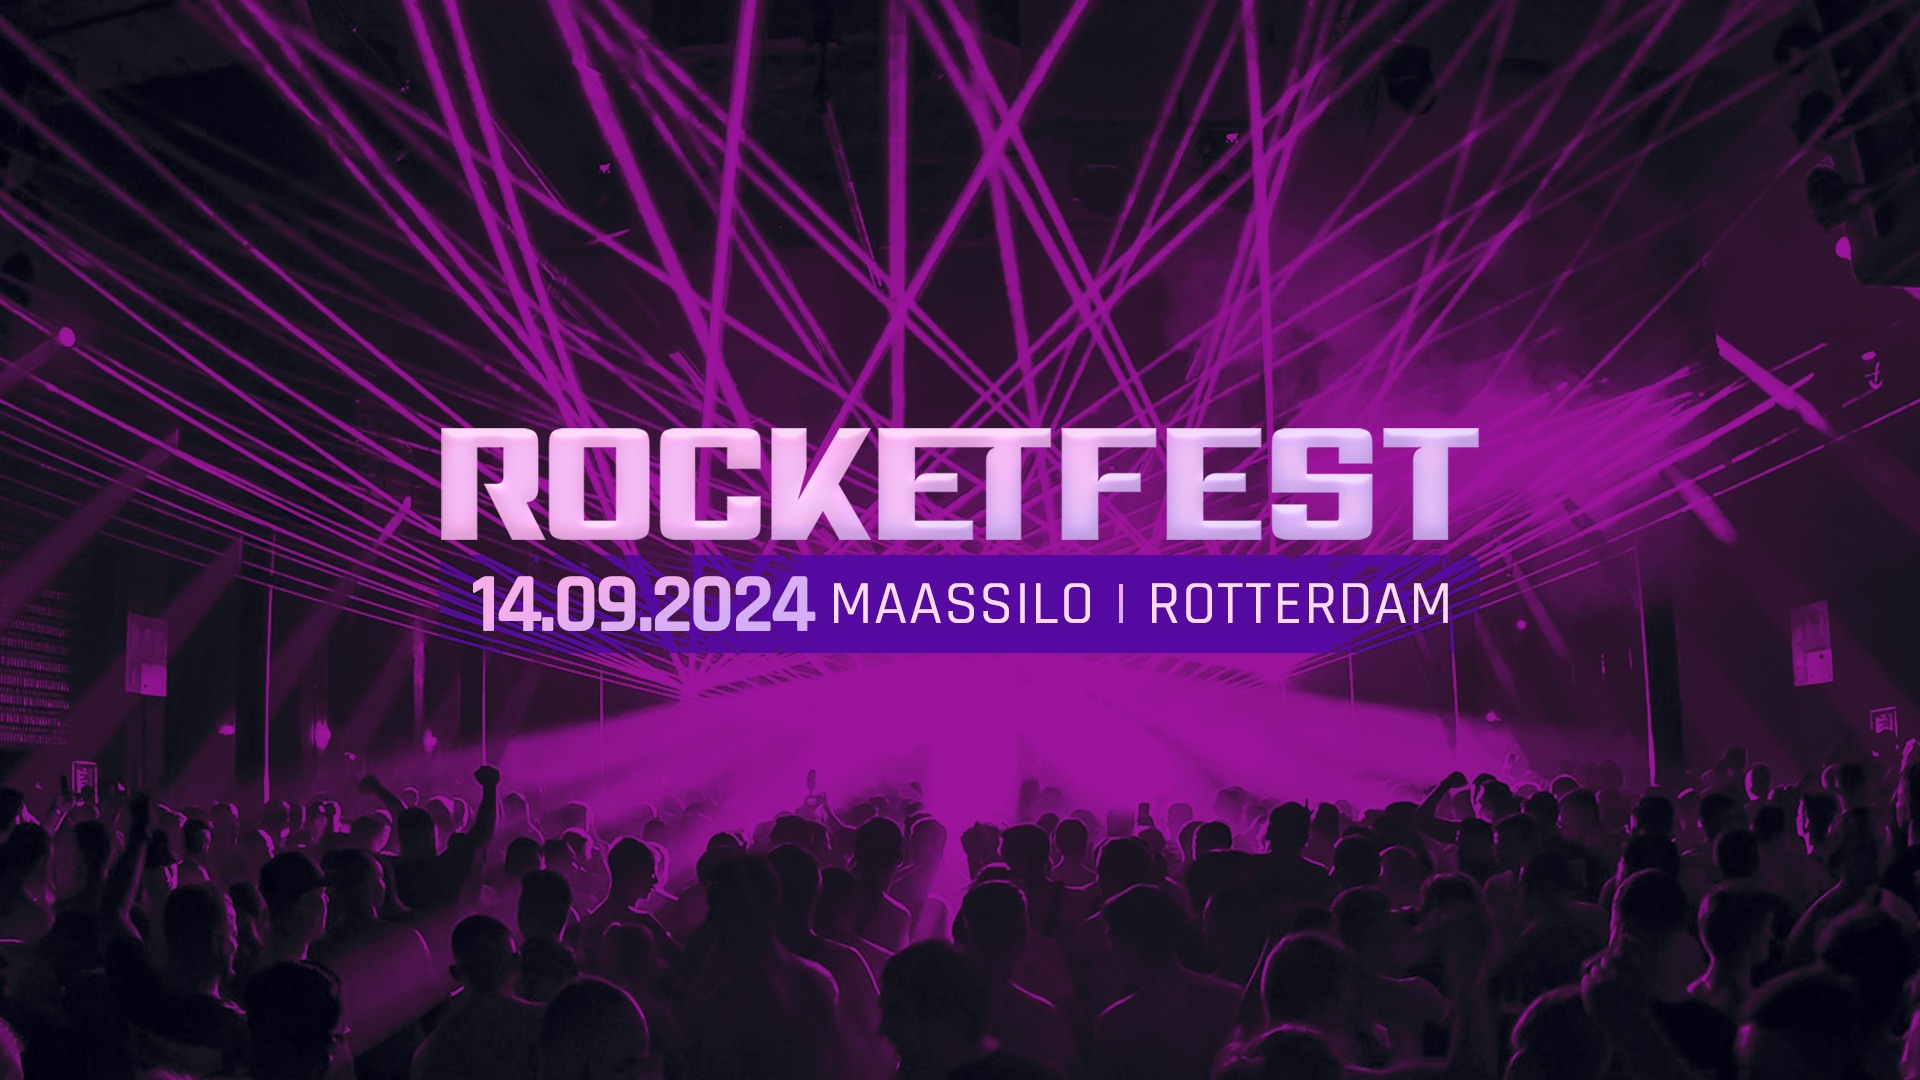 Rocketfest 2024